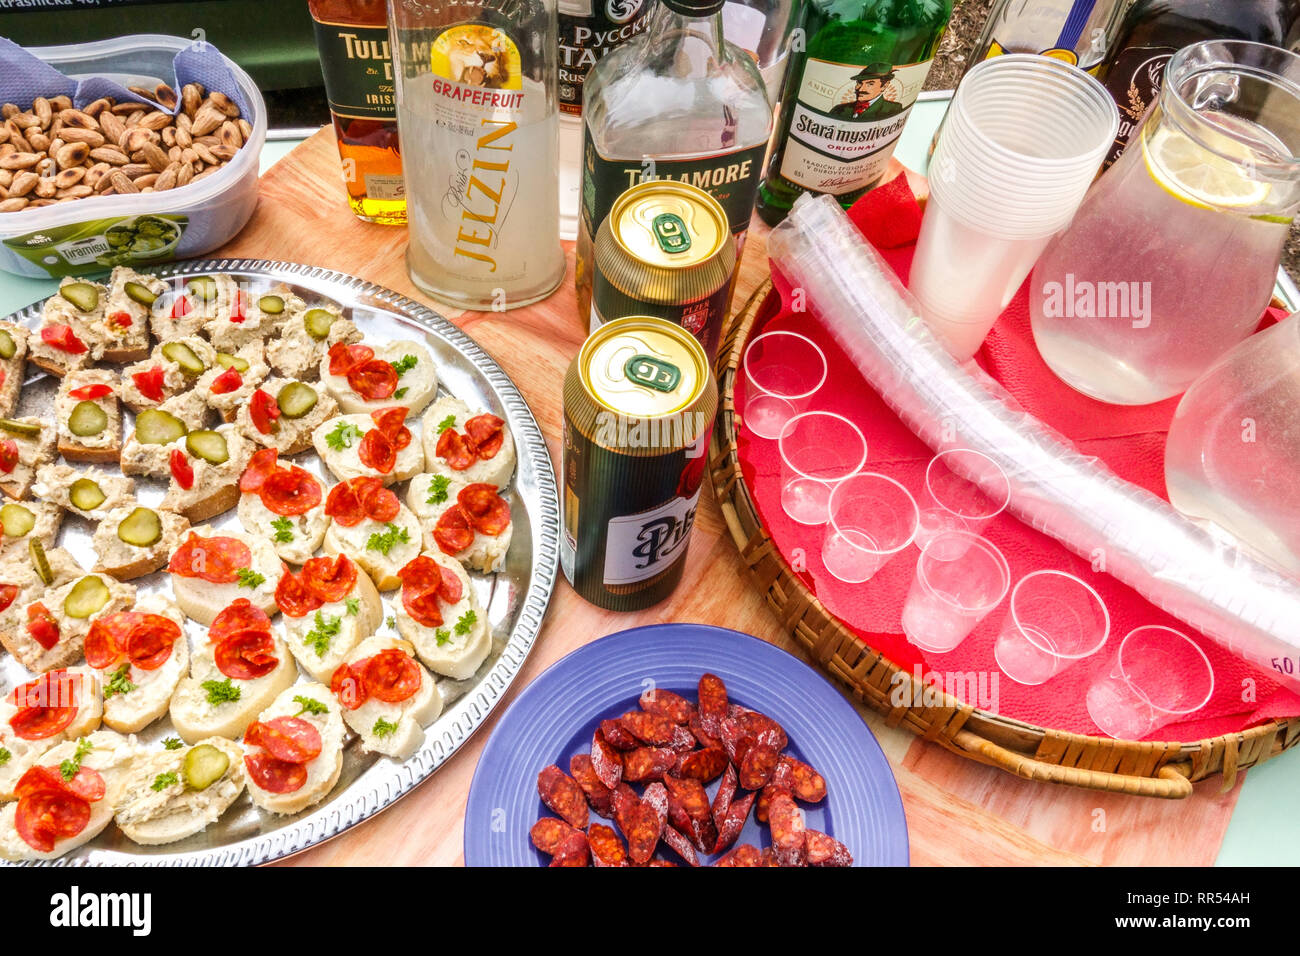 Cuisine tchèque, table avec sandwichs, alcool, bière préparée pour les participants au carnaval, carnaval tchèque - masopust dans le village rural, vodka avec de la nourriture à ta Banque D'Images